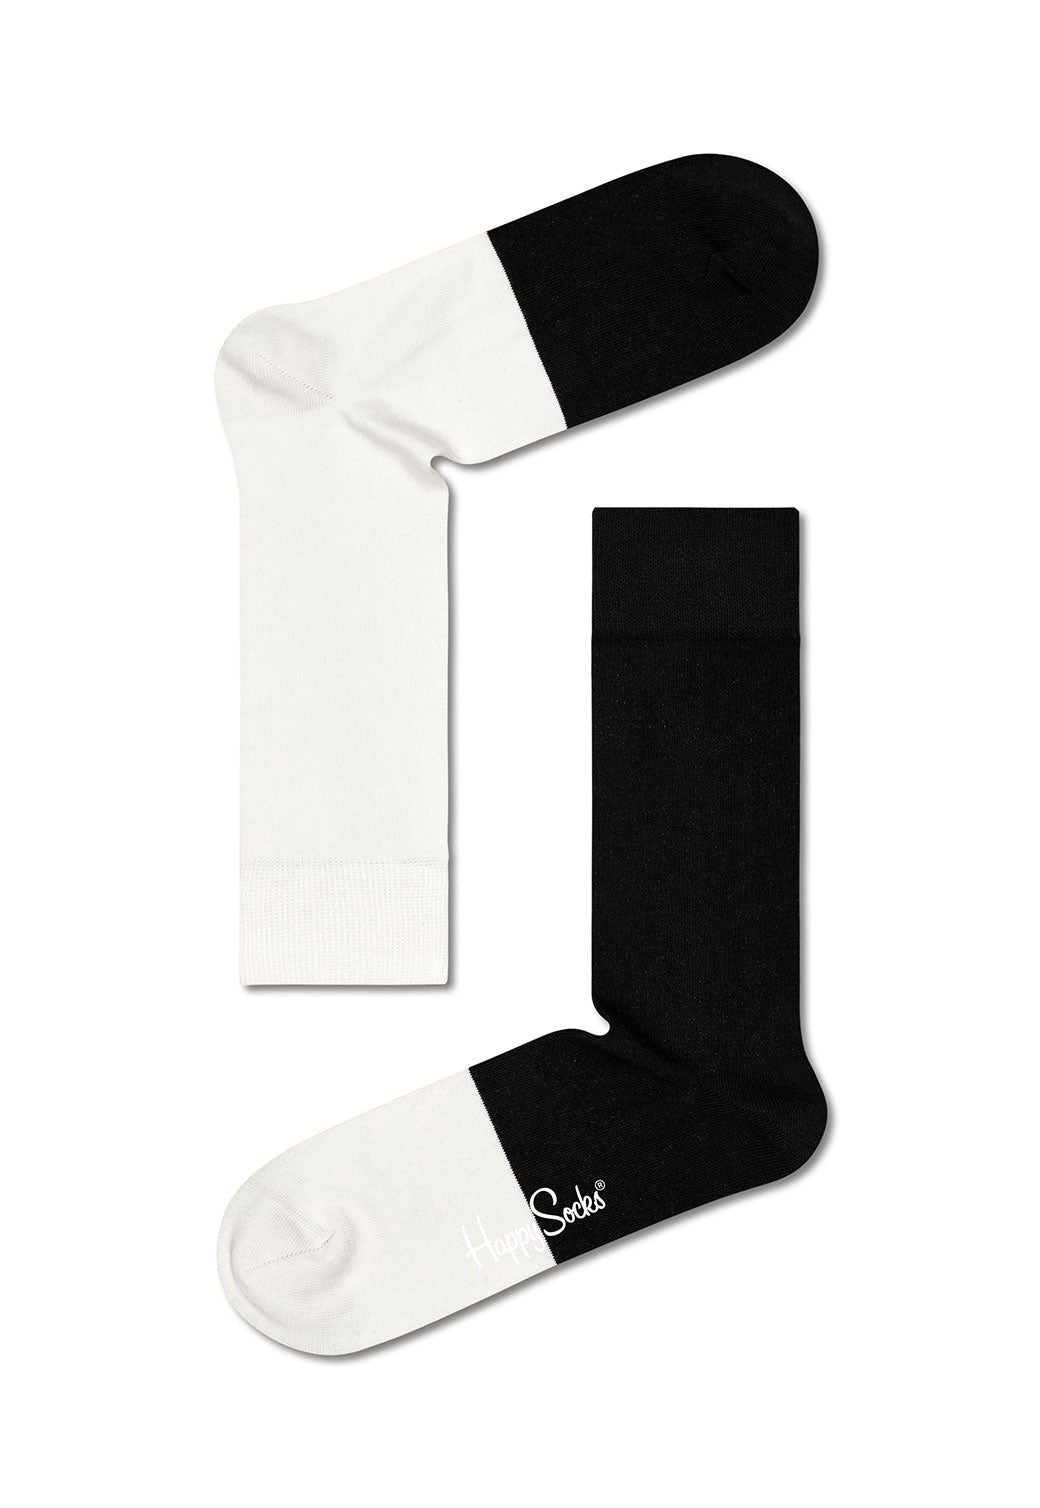 זוג גרביים בהדפס שחור לבן